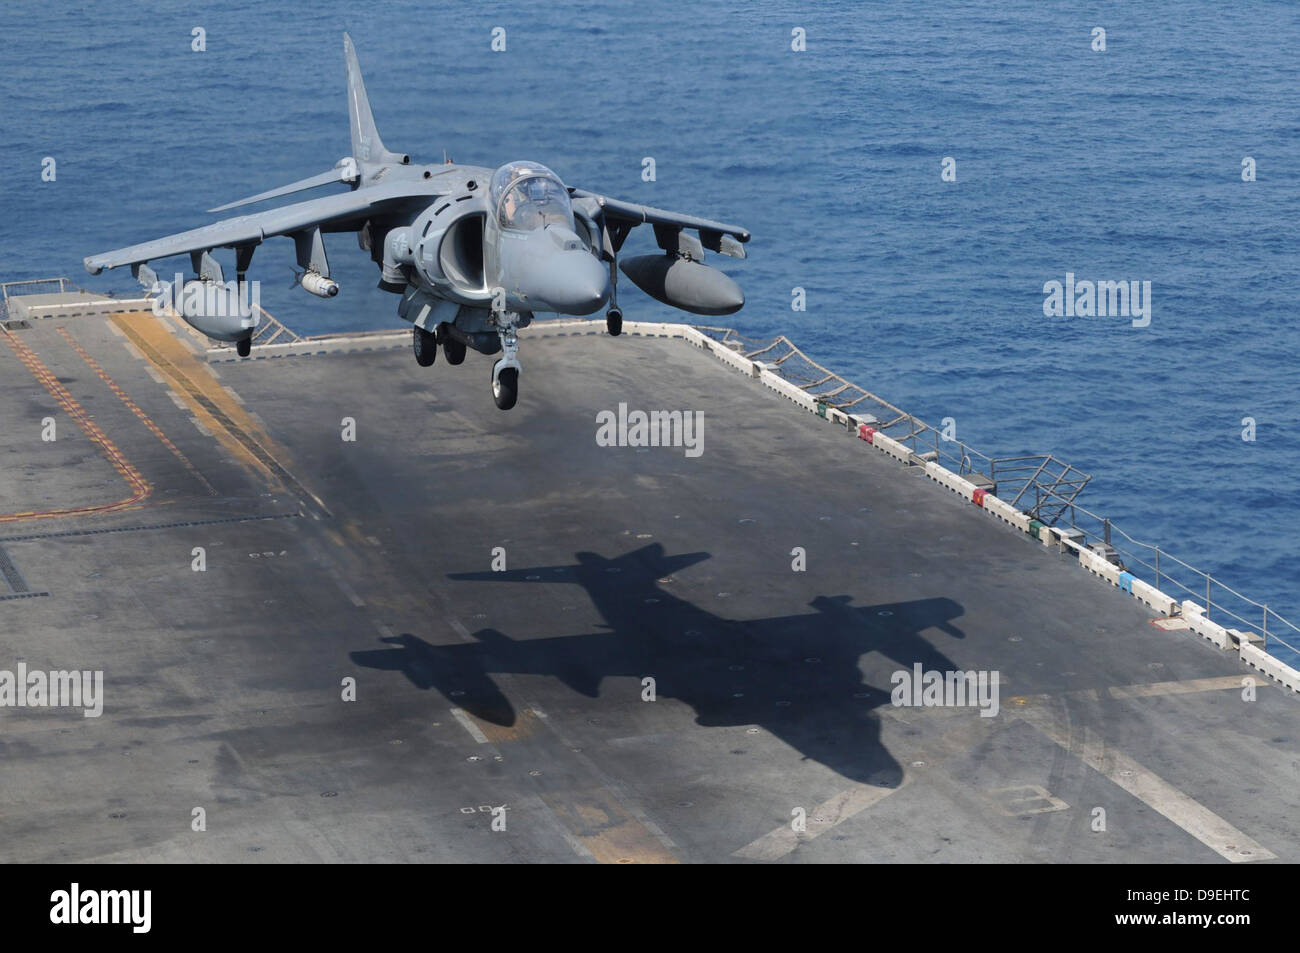 An AV-8B Harrier aircraft lands on the flight deck of USS Peleliu. Stock Photo